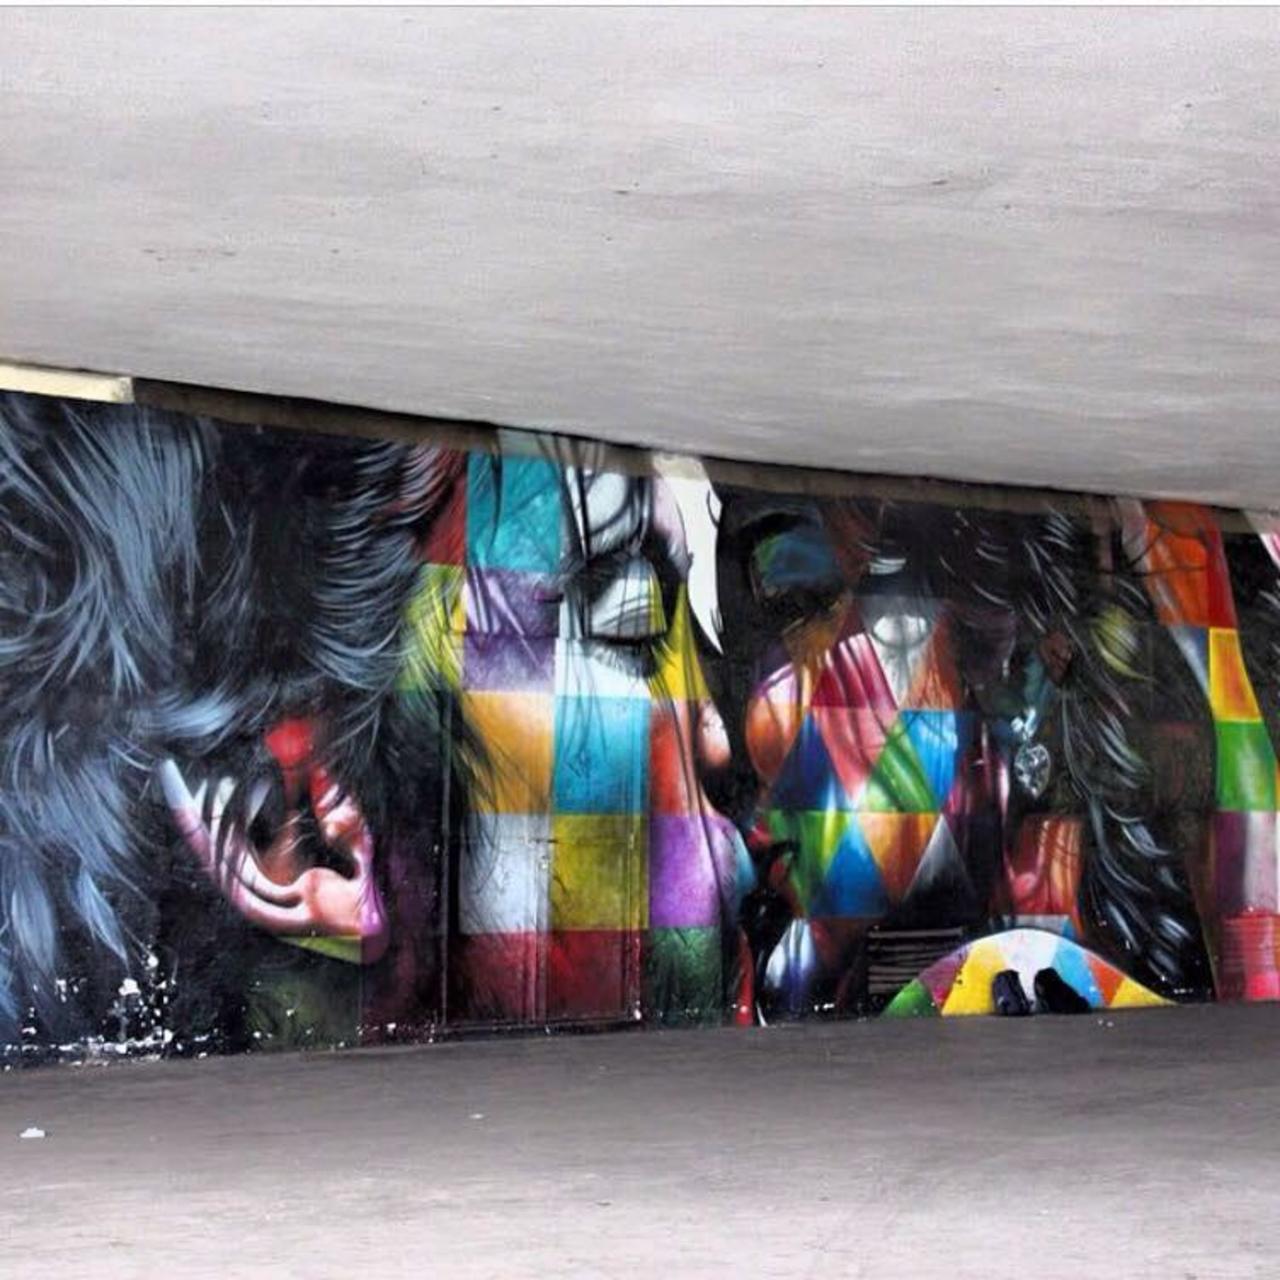 "@GoogleStreetArt: New Street Art by the brilliant Eduardo Kobra 

#art #mural #graffiti #streetart http://t.co/FB6Po6ciLe"